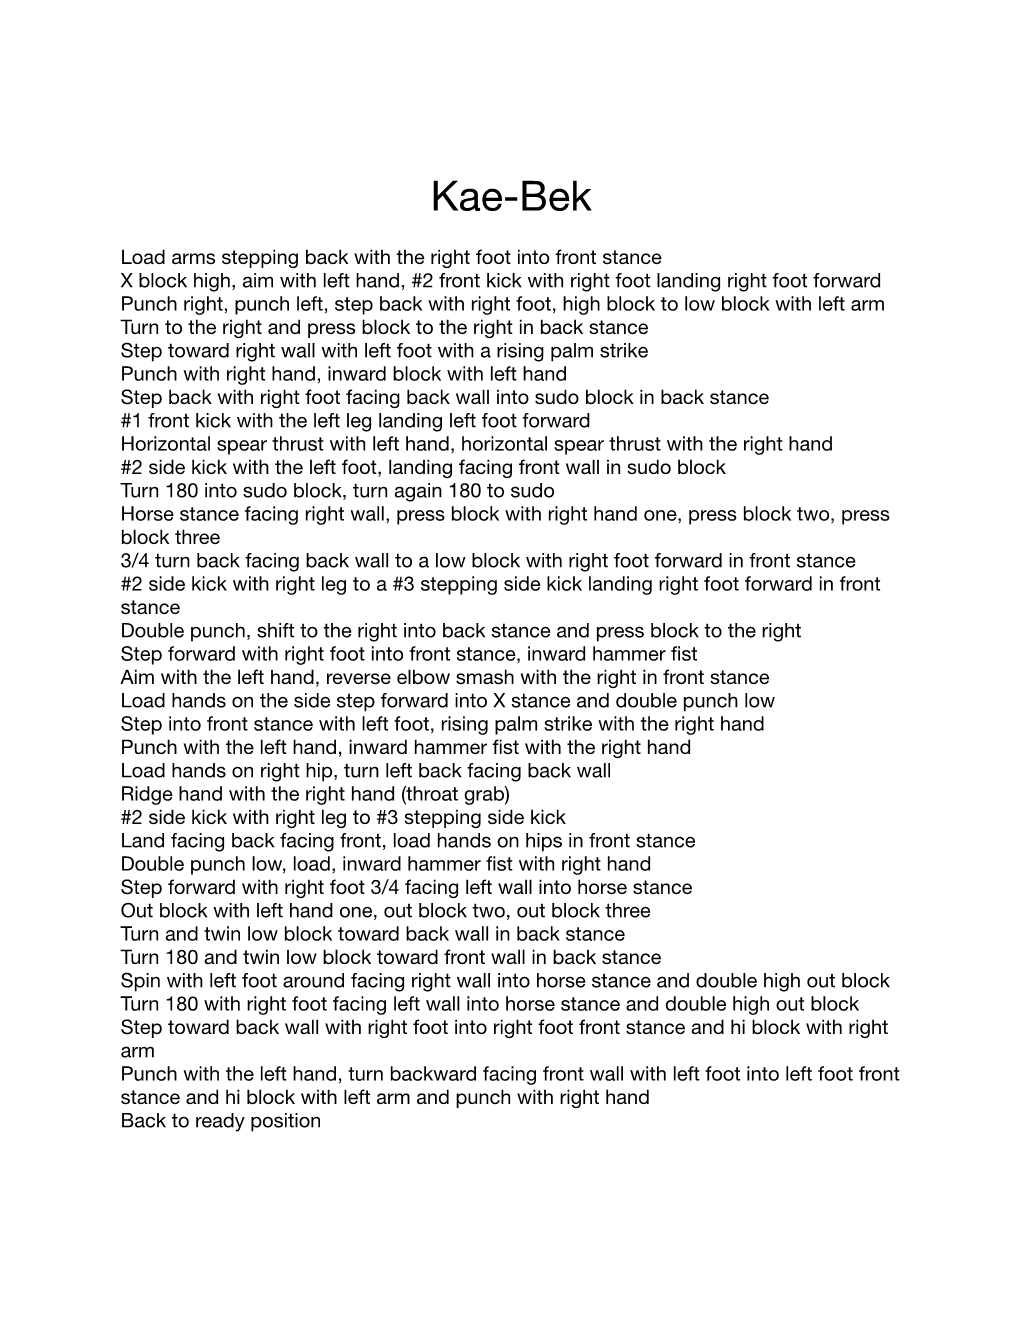 Kata PDF (Kae-Bek